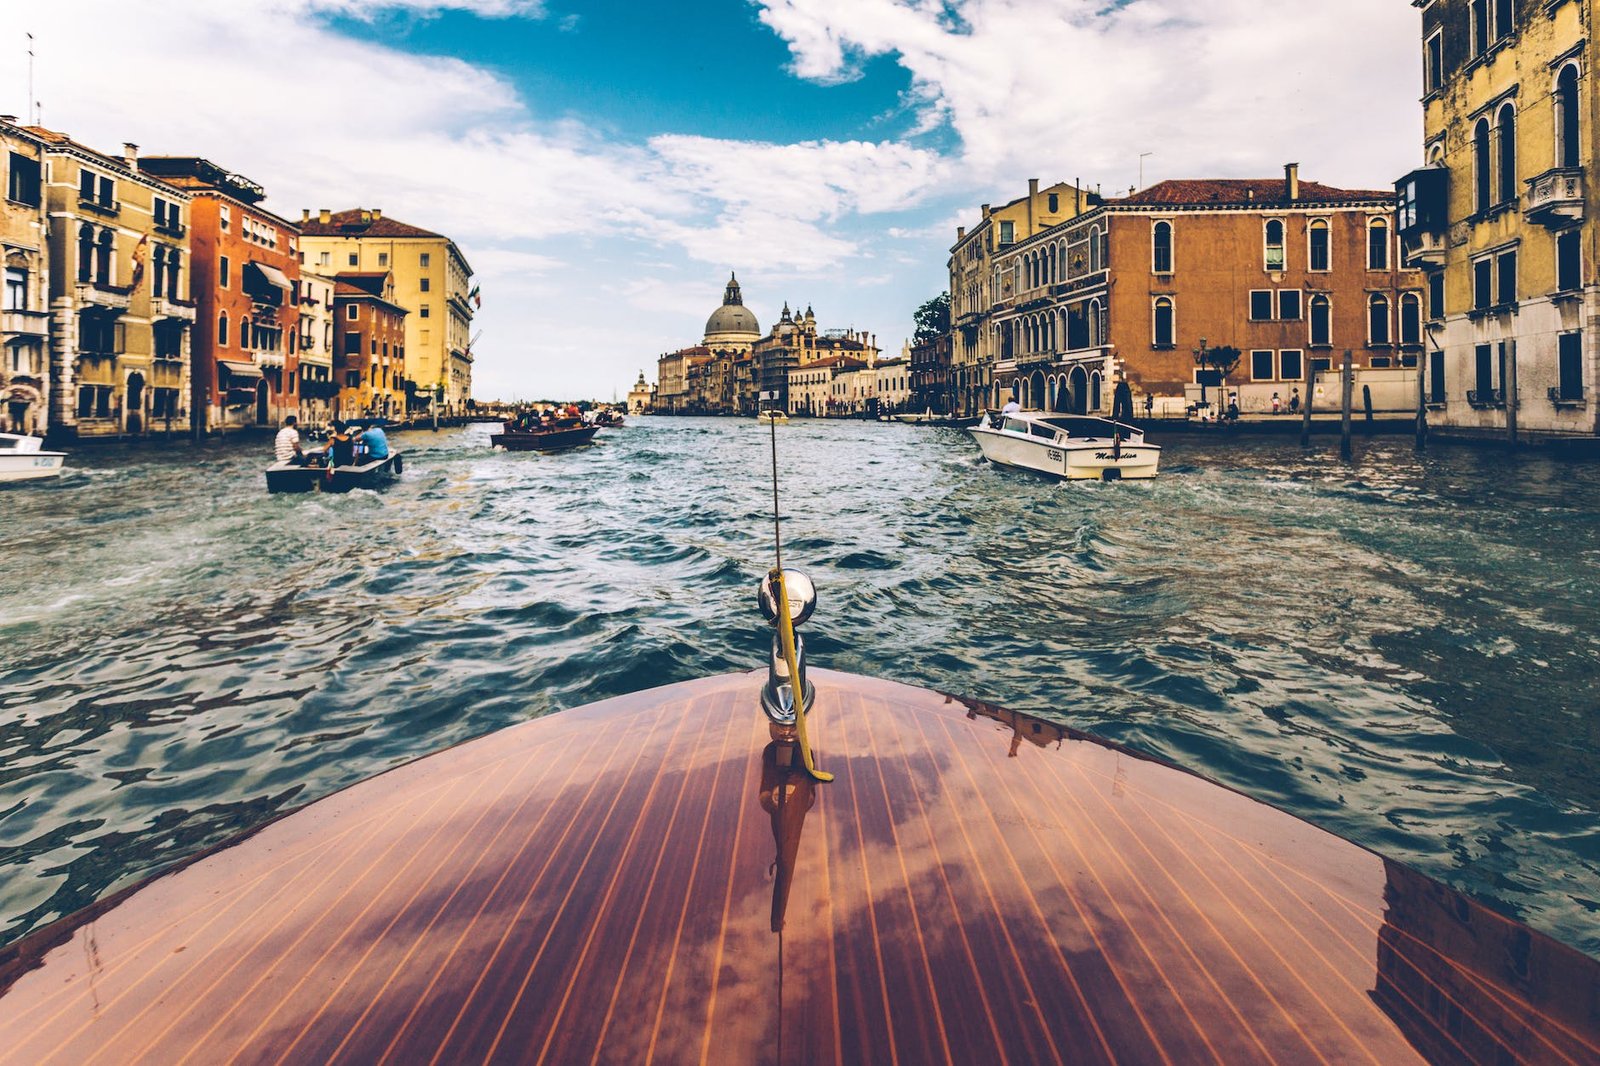 Venecia, más límites a los grupos turísticos